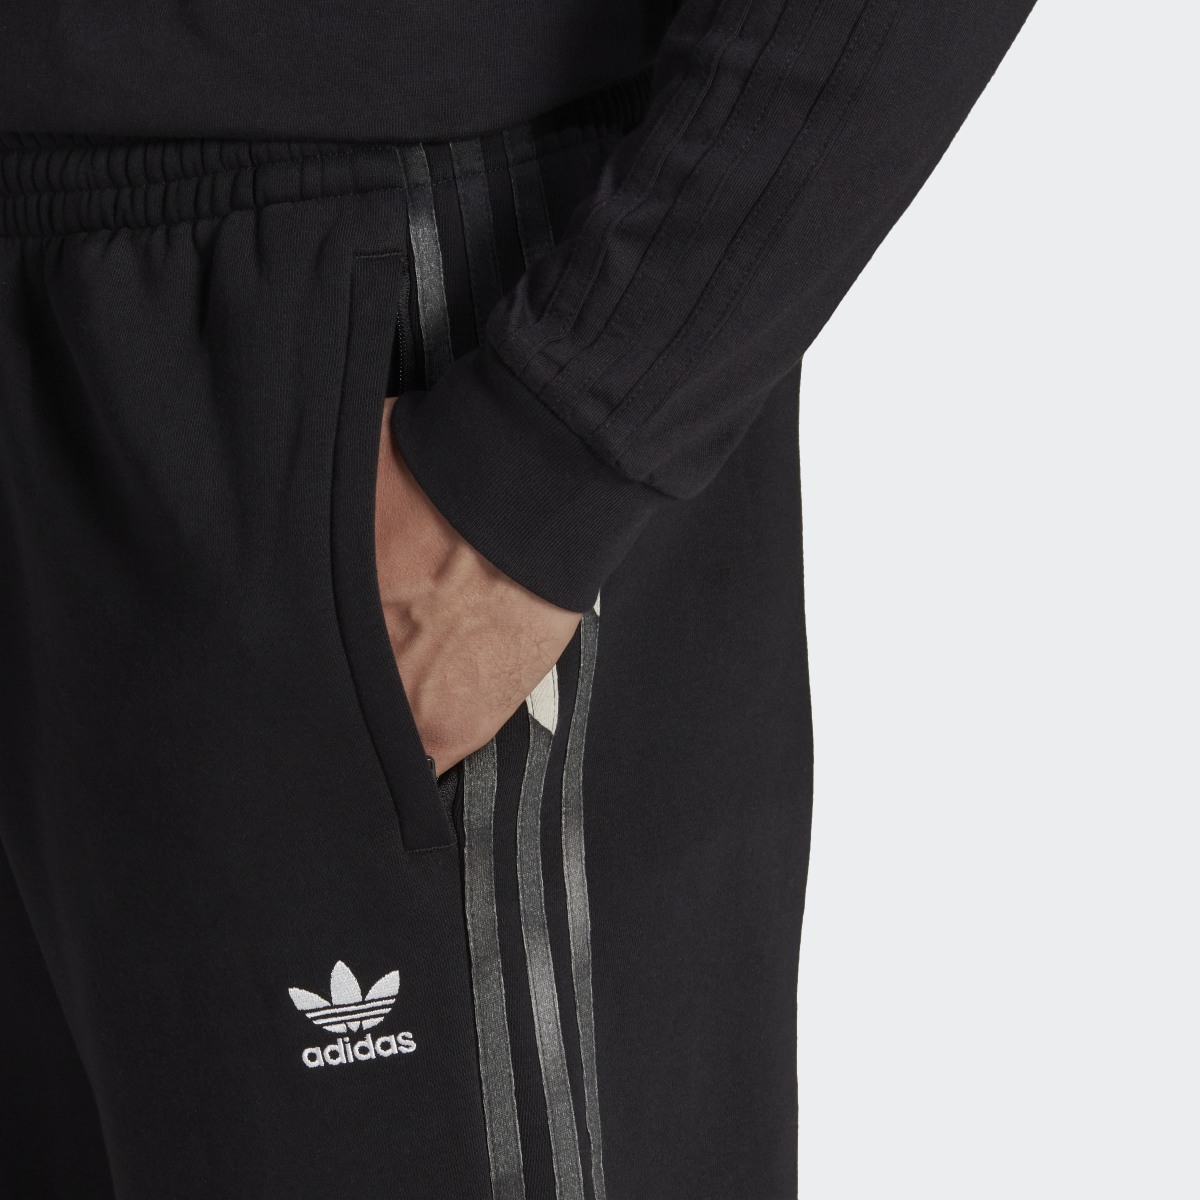 Adidas Pantalon de survêtement graphique à motif camouflage. 5